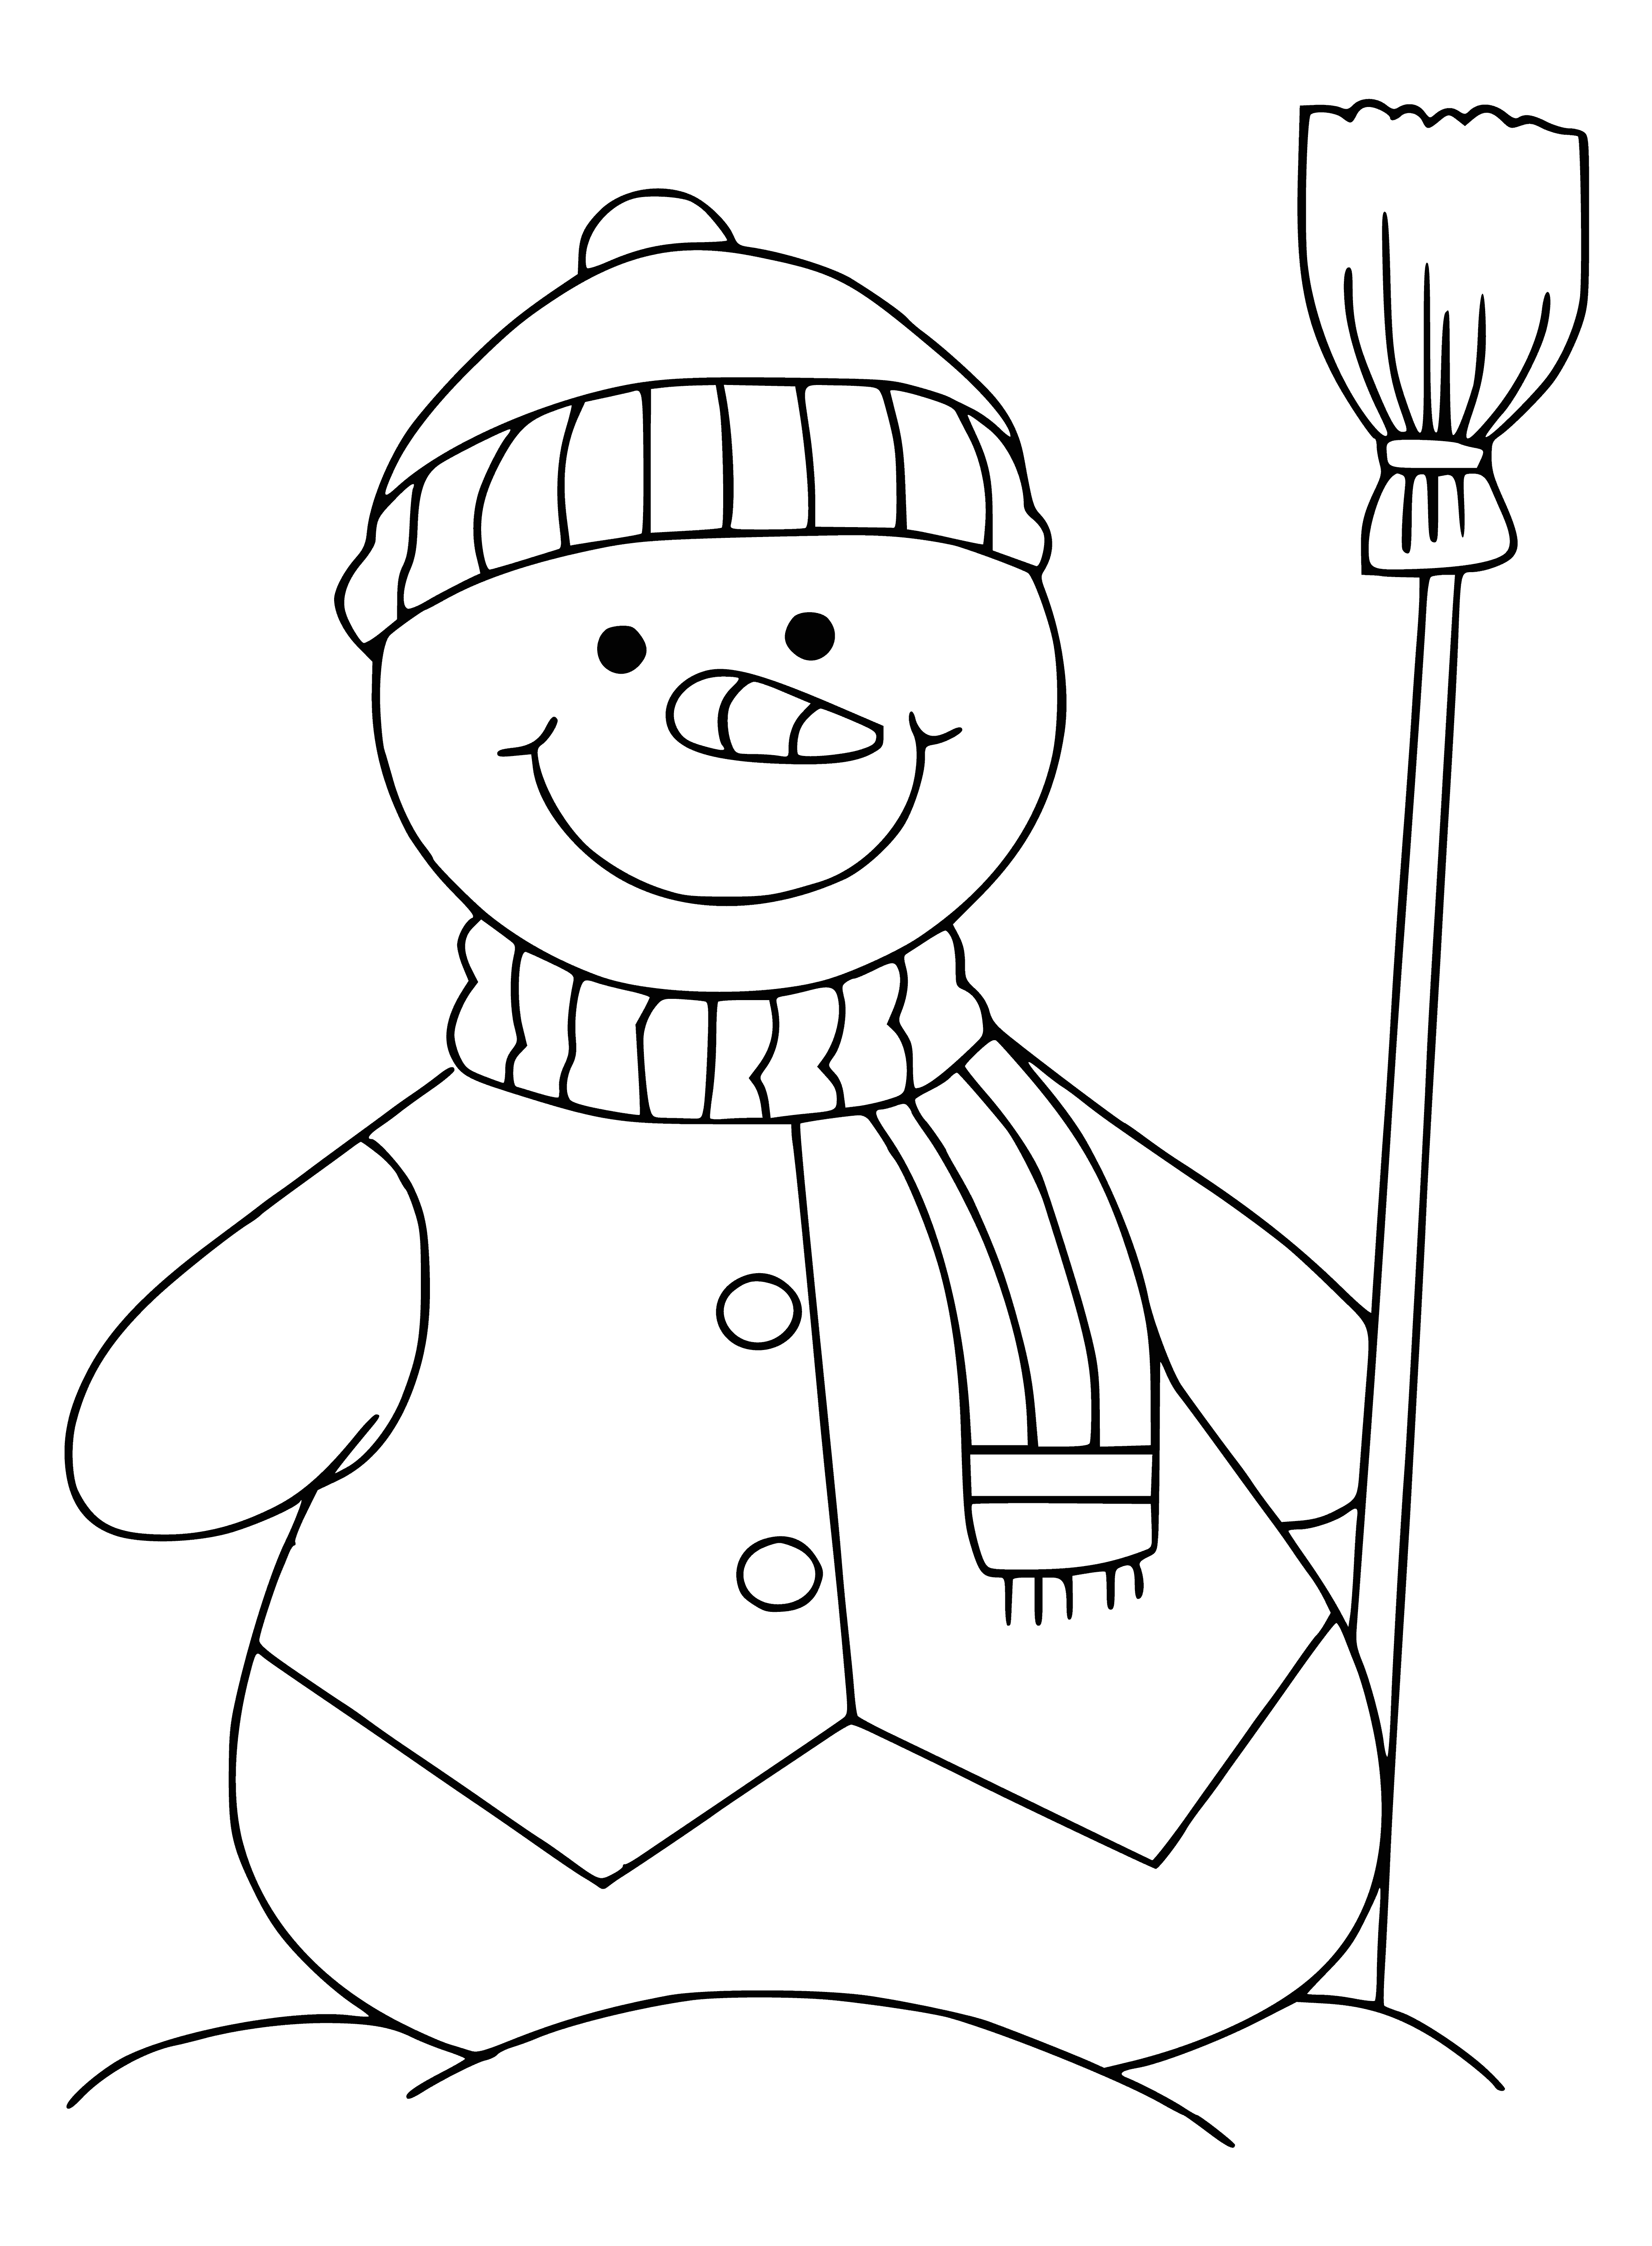 Веселый снеговик раскраска